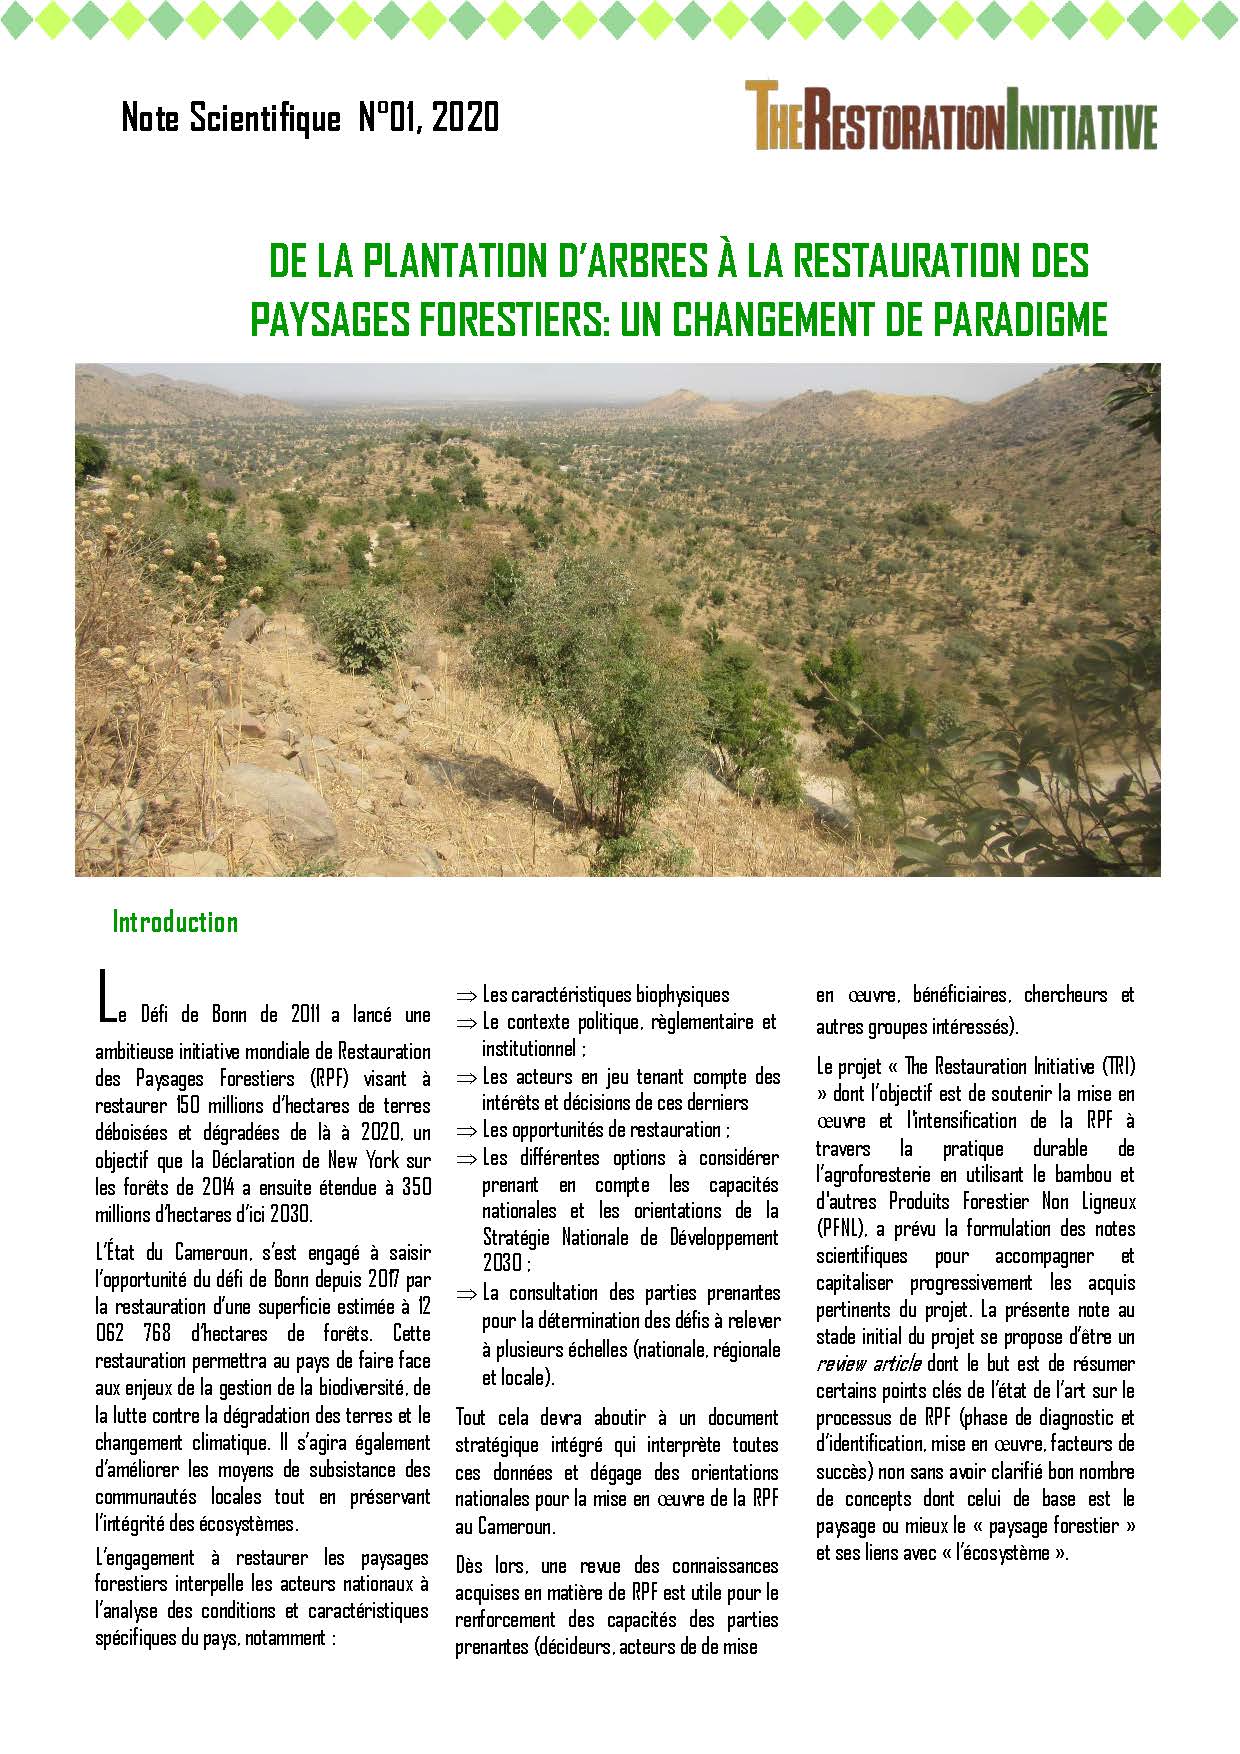 Note scientifique : De la plantation d’arbres à la restauration des paysages forestiers: un changement de paradigme